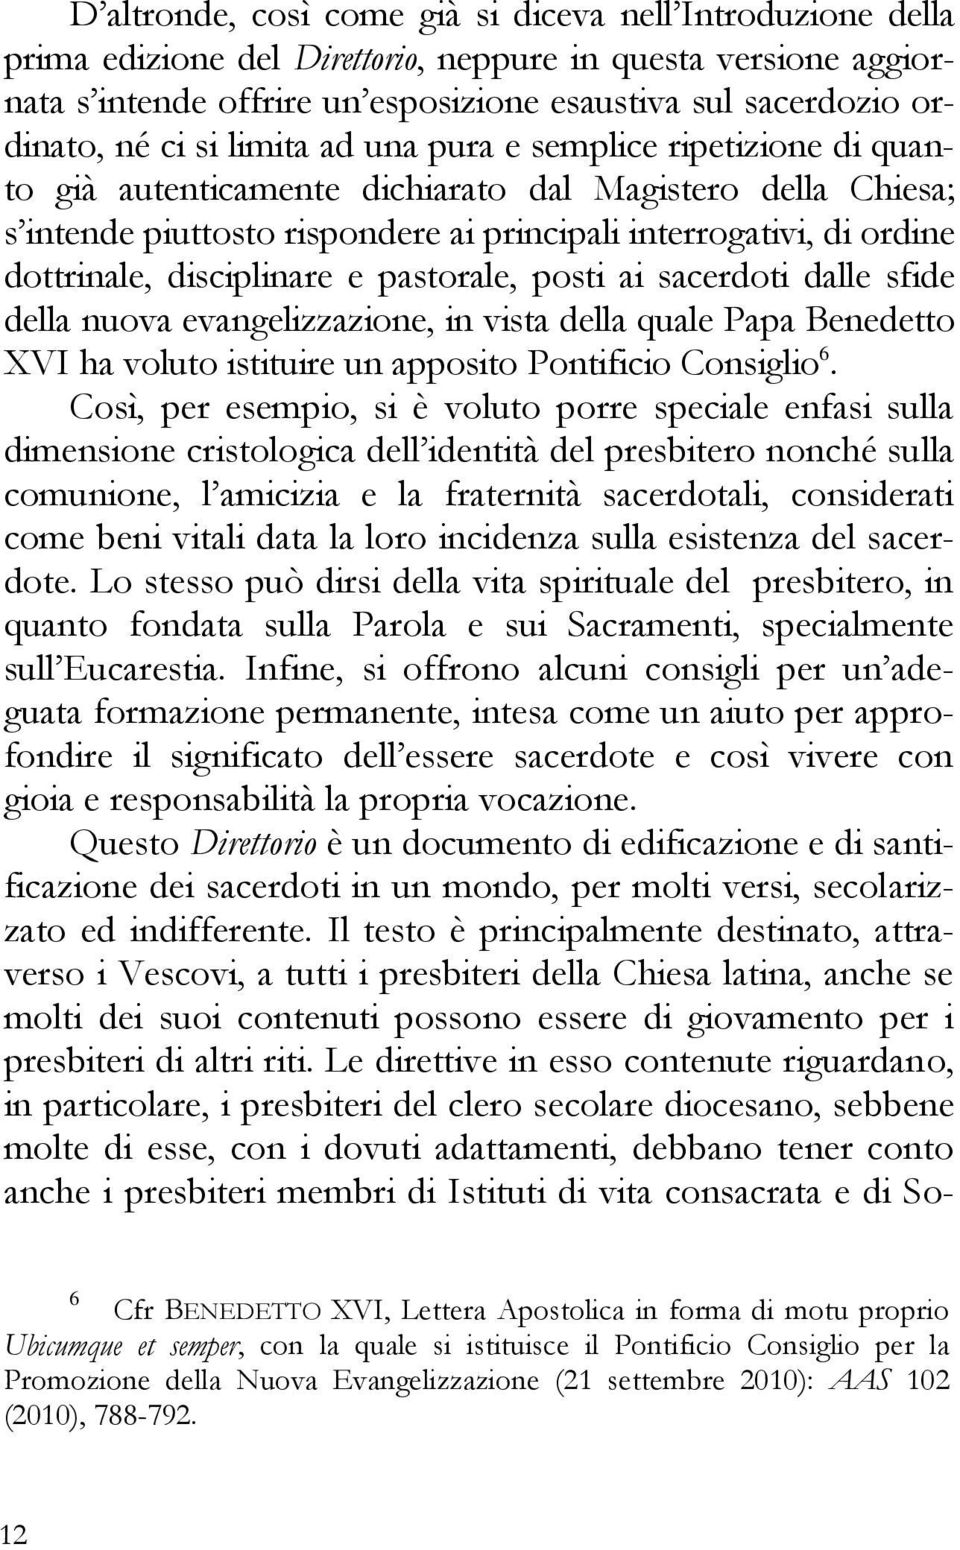 disciplinare e pastorale, posti ai sacerdoti dalle sfide della nuova evangelizzazione, in vista della quale Papa Benedetto XVI ha voluto istituire un apposito Pontificio Consiglio 6.